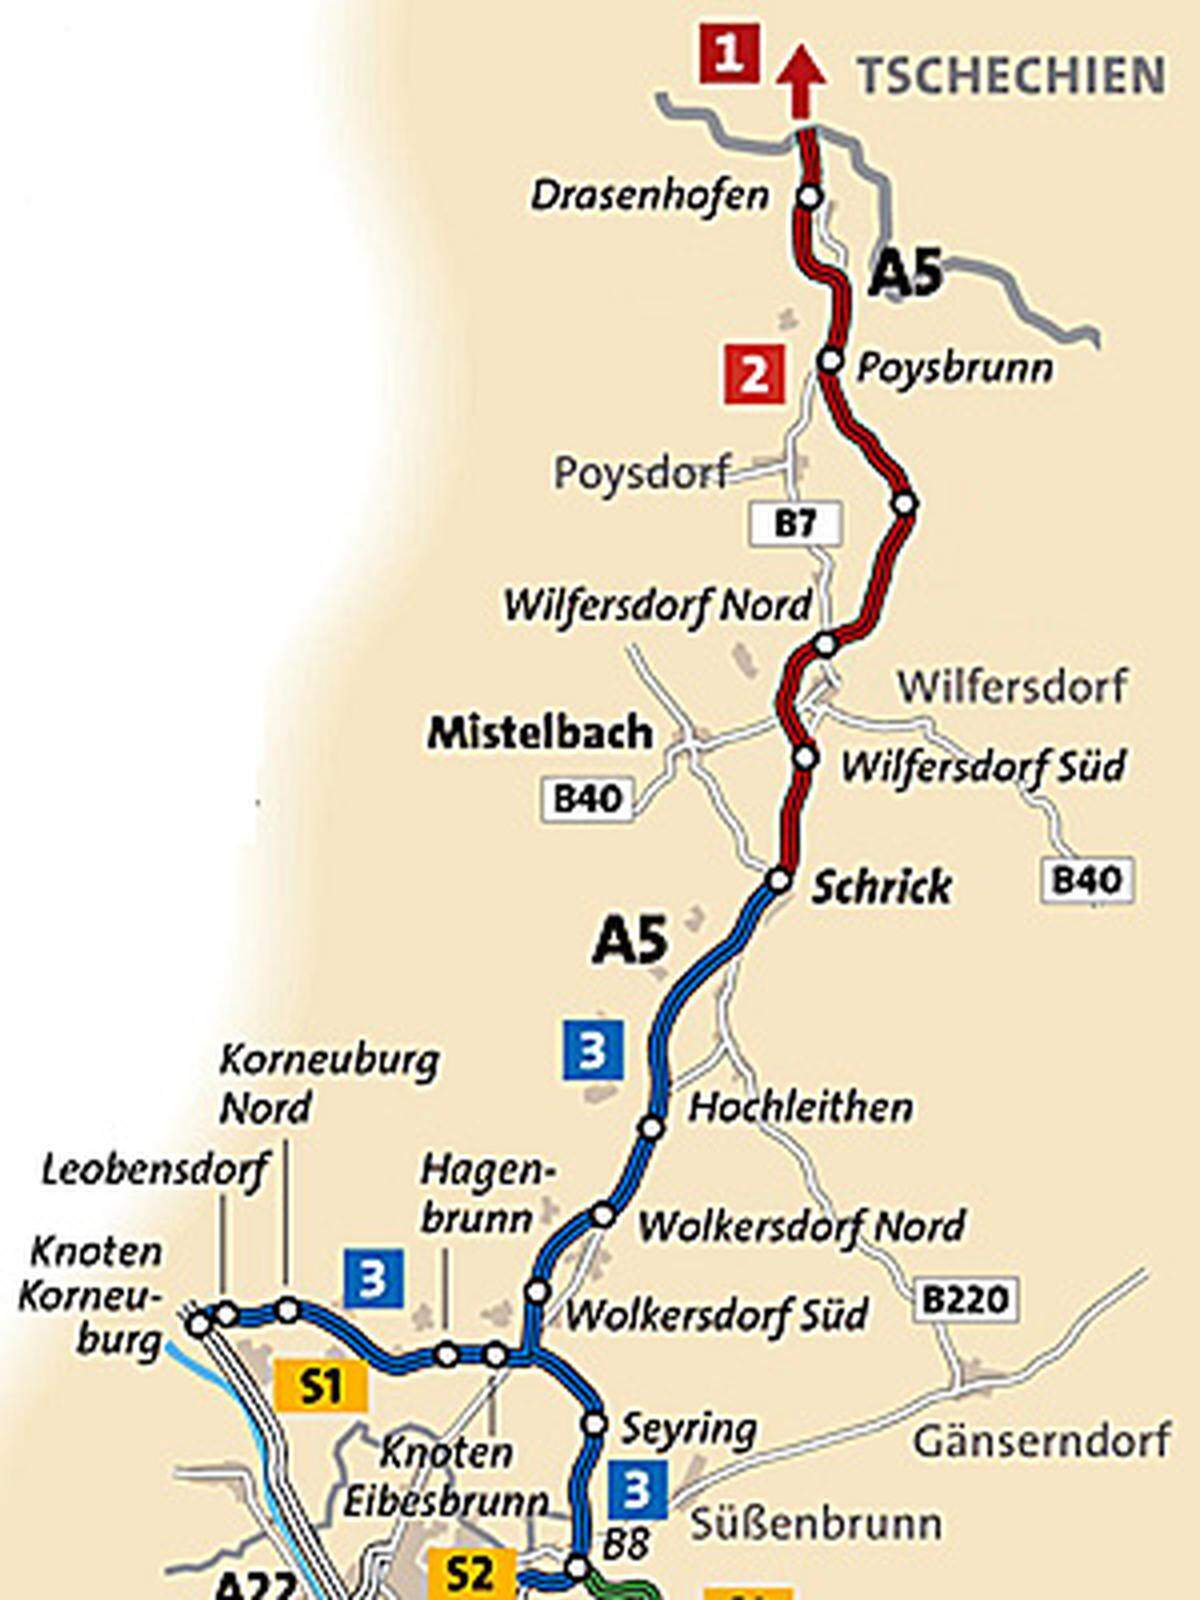 Vorbei an Wolkersdorf und Gaweinstal führt die A5 dann weiter bis zur Anschluss-Stelle Schrick. Insbesonders für Pendler aus dem Weinviertel soll sich die Fahrzeit dadurch erheblich verkürzen.